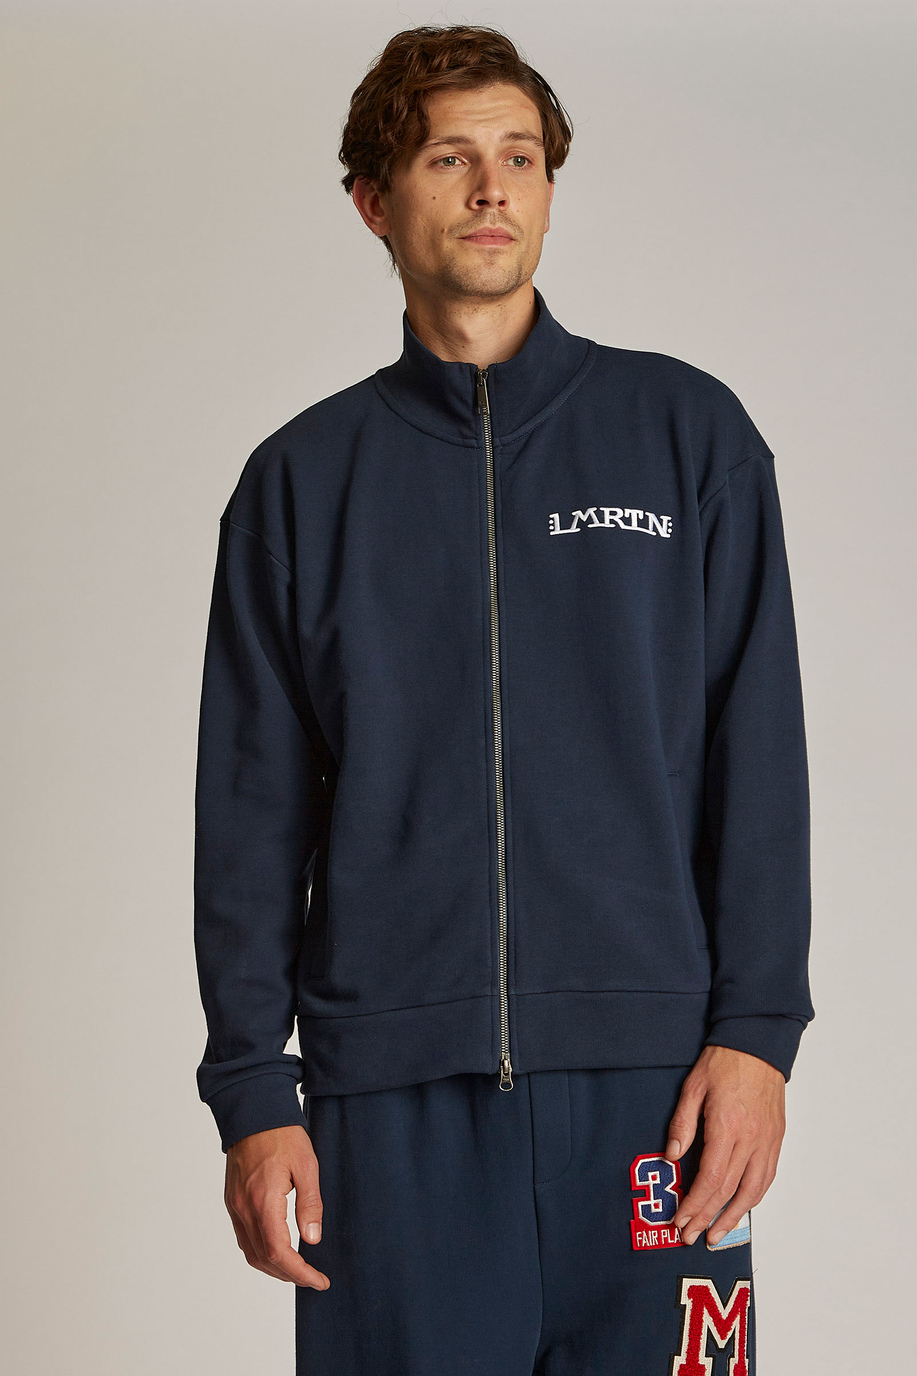 Sweat-shirt homme 100% coton, avec fermeture zippée et coupe oversize - Inspiration | La Martina - Official Online Shop